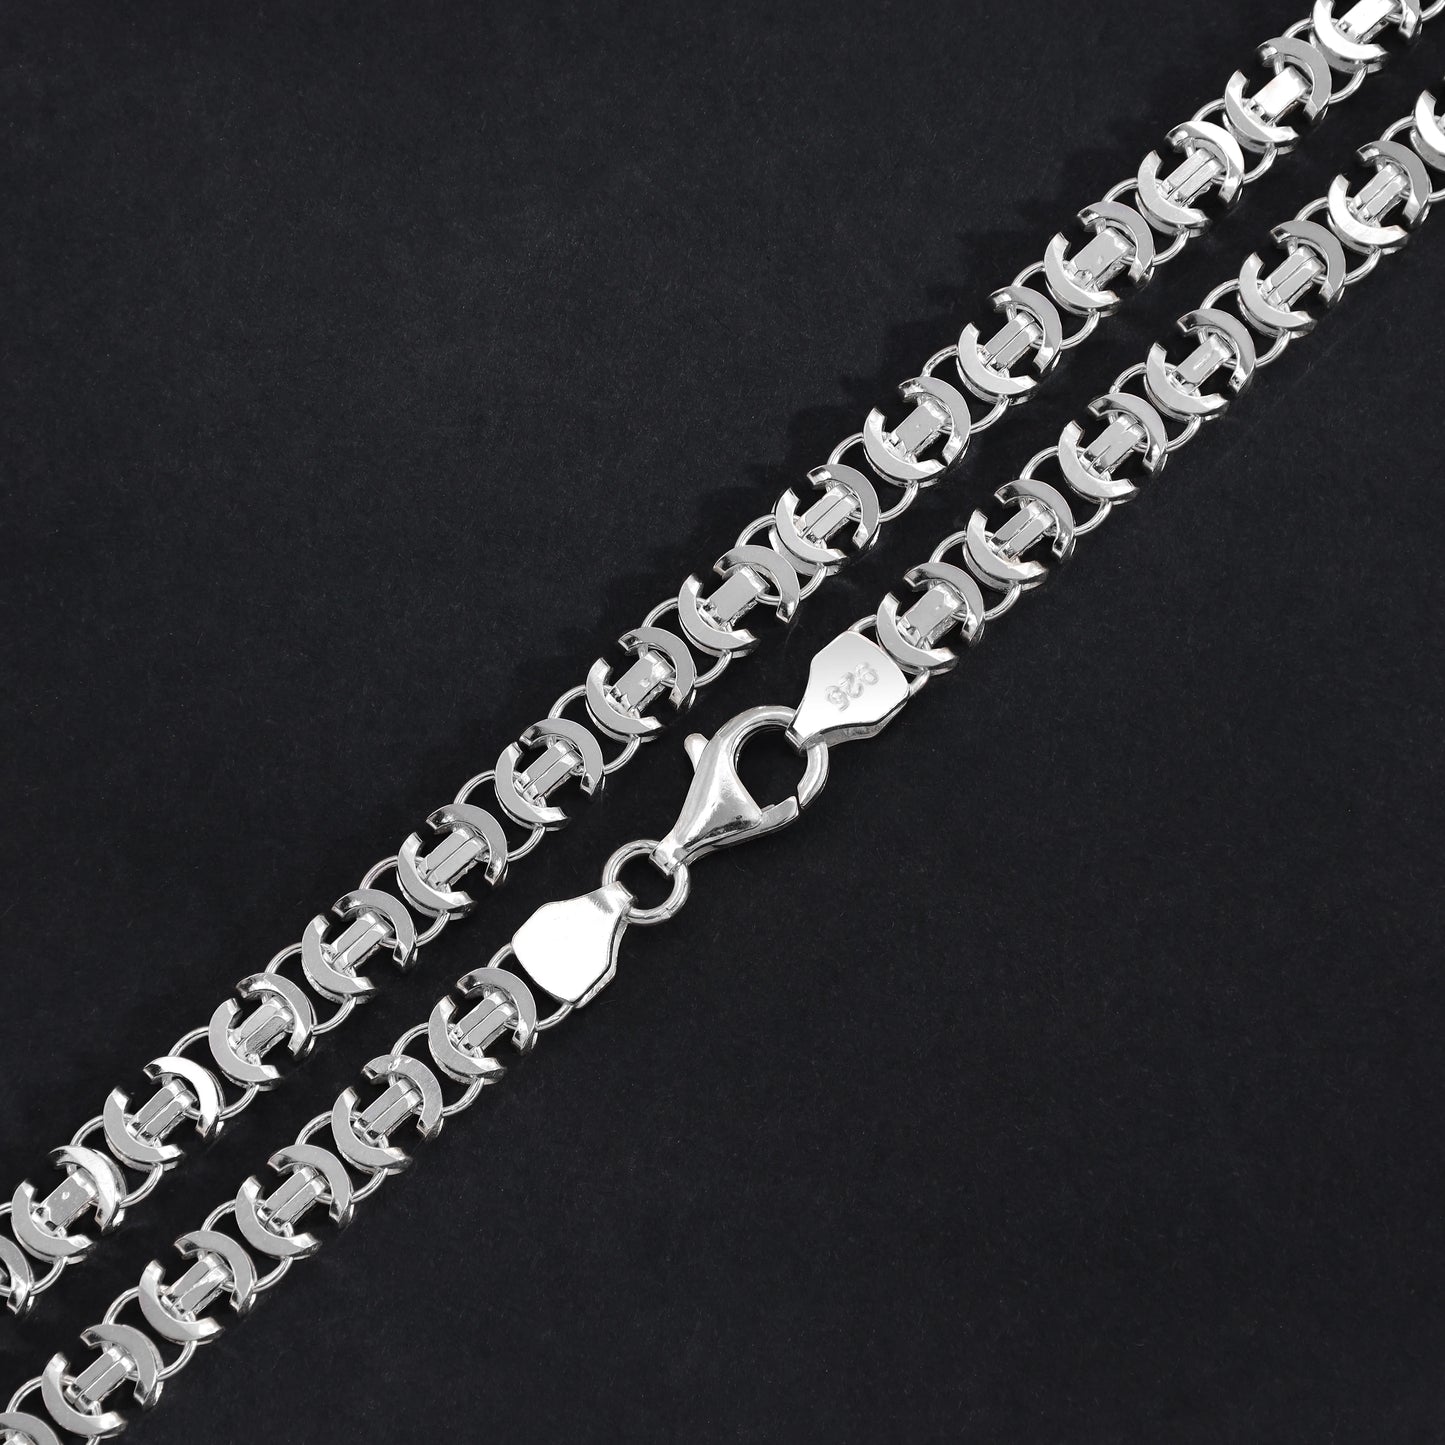 Flache Königskette Etrusker Kette 65cm lang 6mm breit 925 Sterling Silber (K855) - Taipan Schmuck